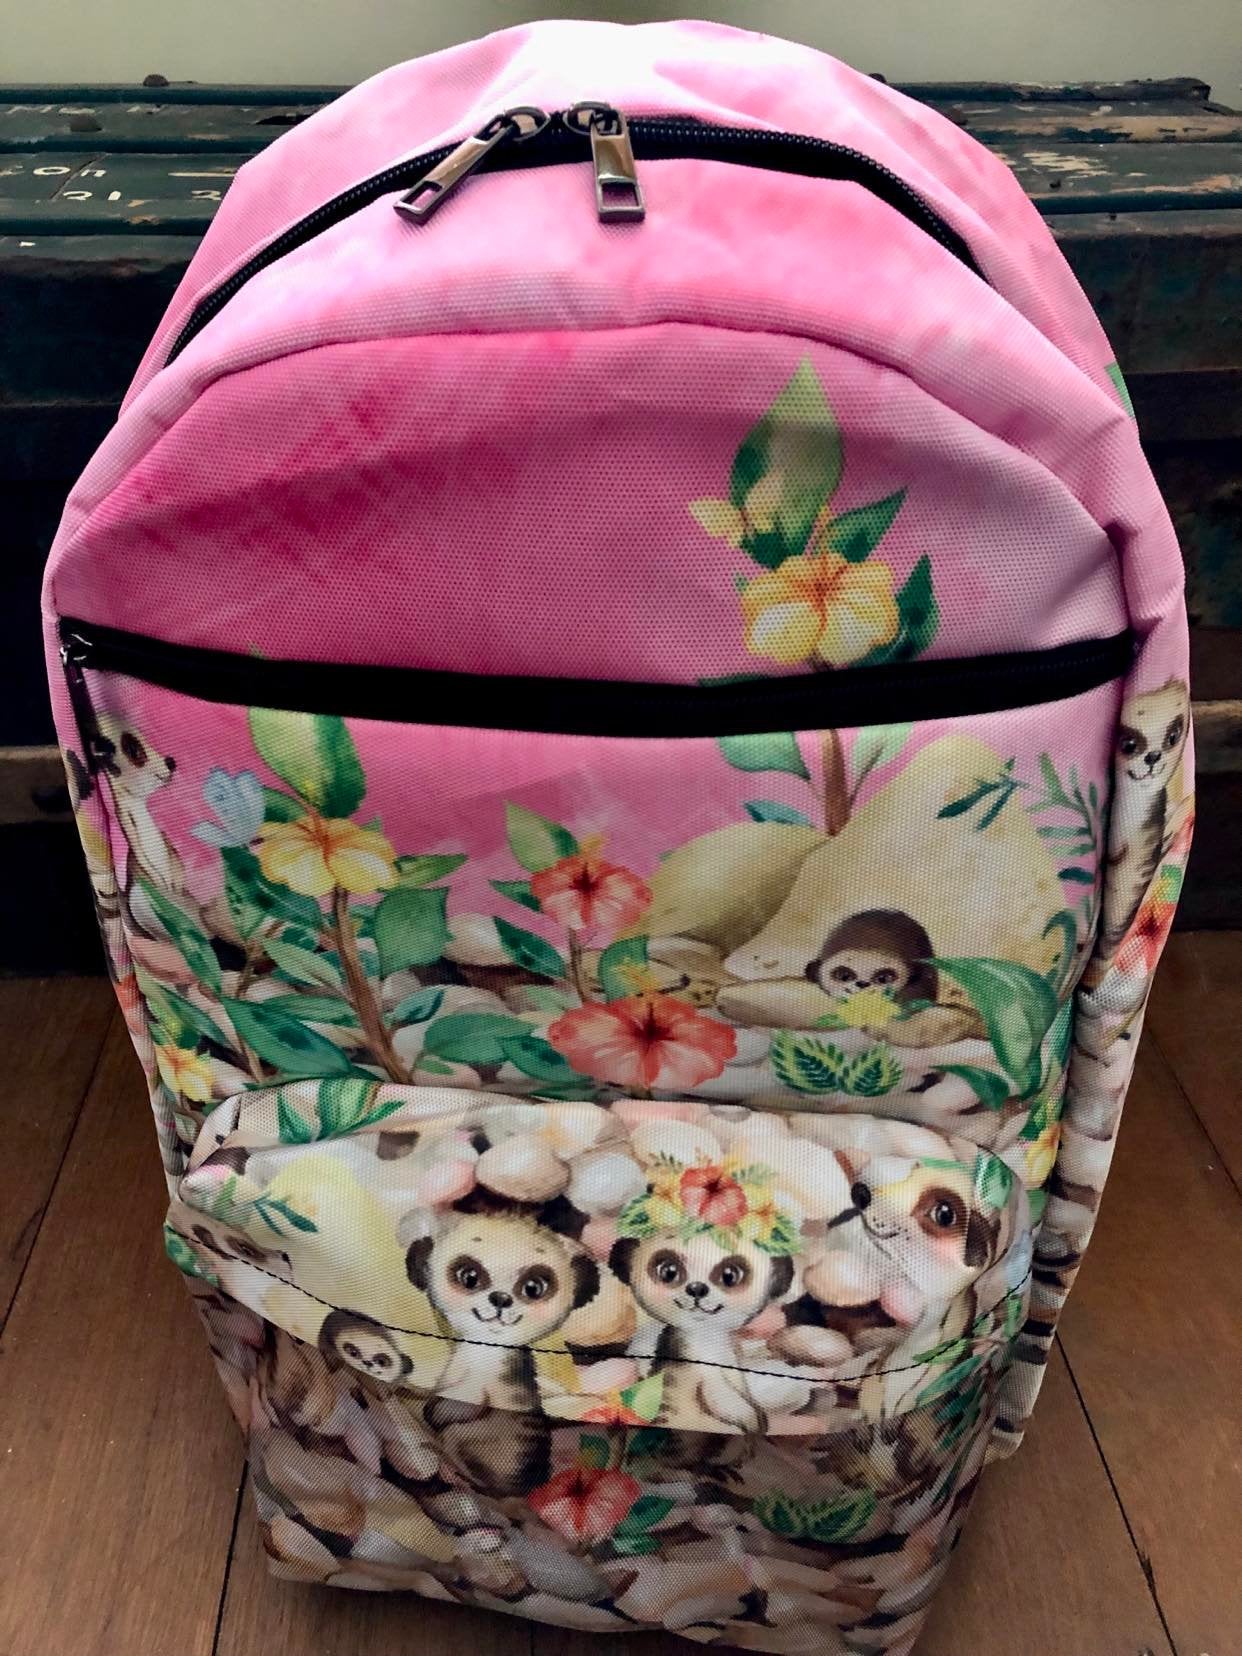 Meerkats - Travel Backpack